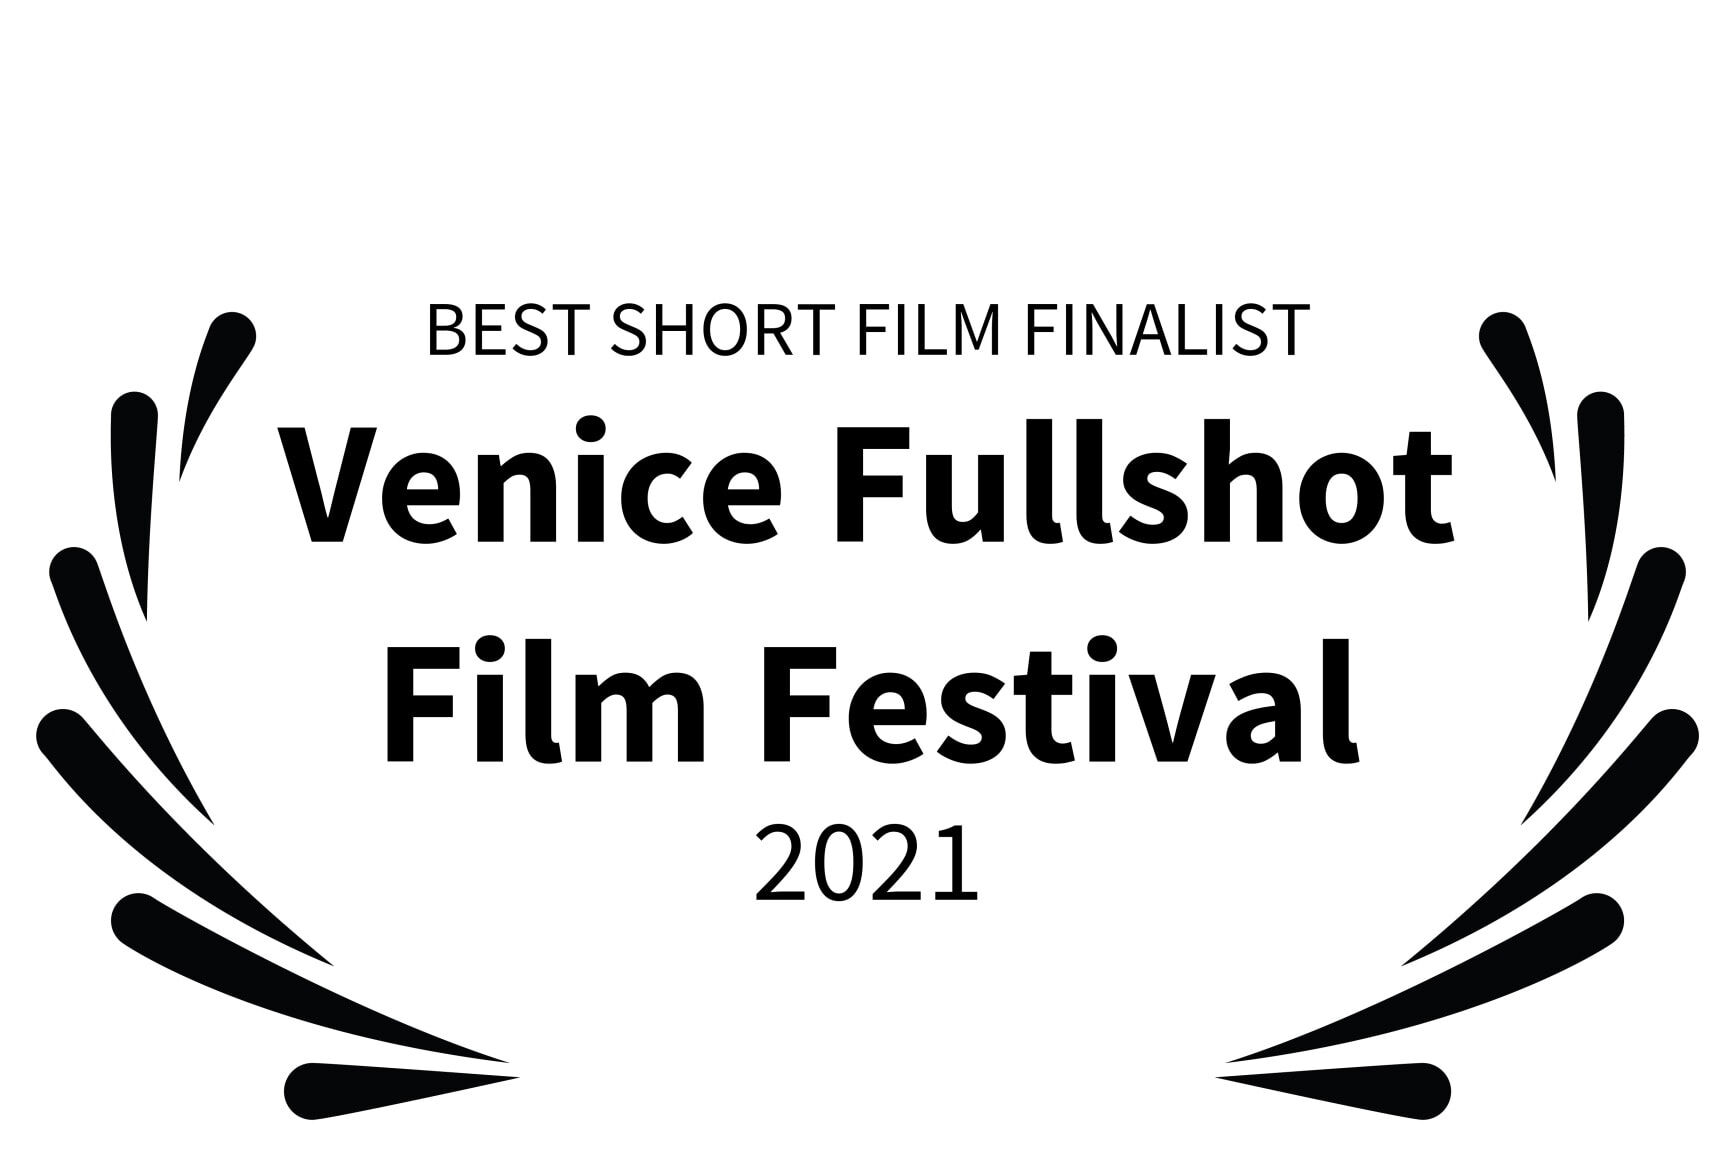 BEST SHORT FILM FINALIST - Venice Fullshot Film Festival - 2021